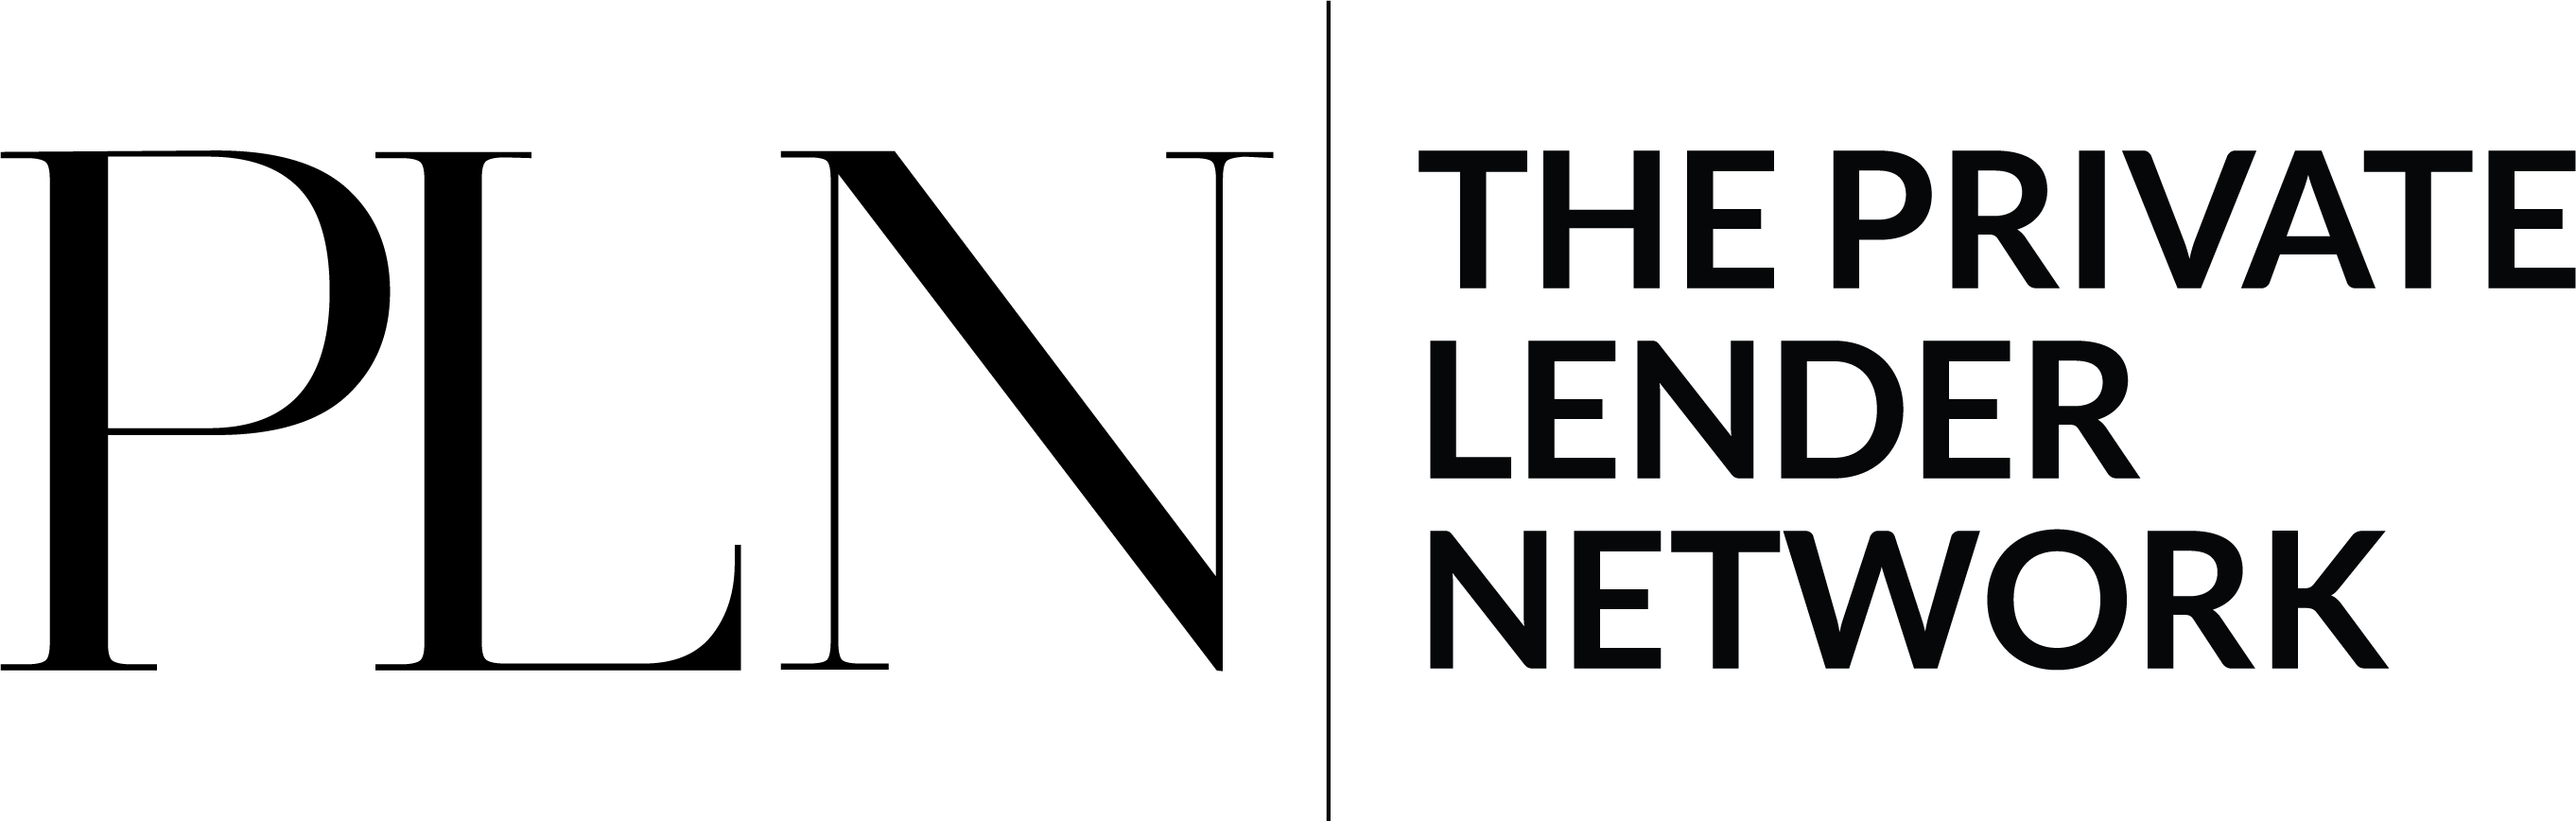 Private Lender Network logo